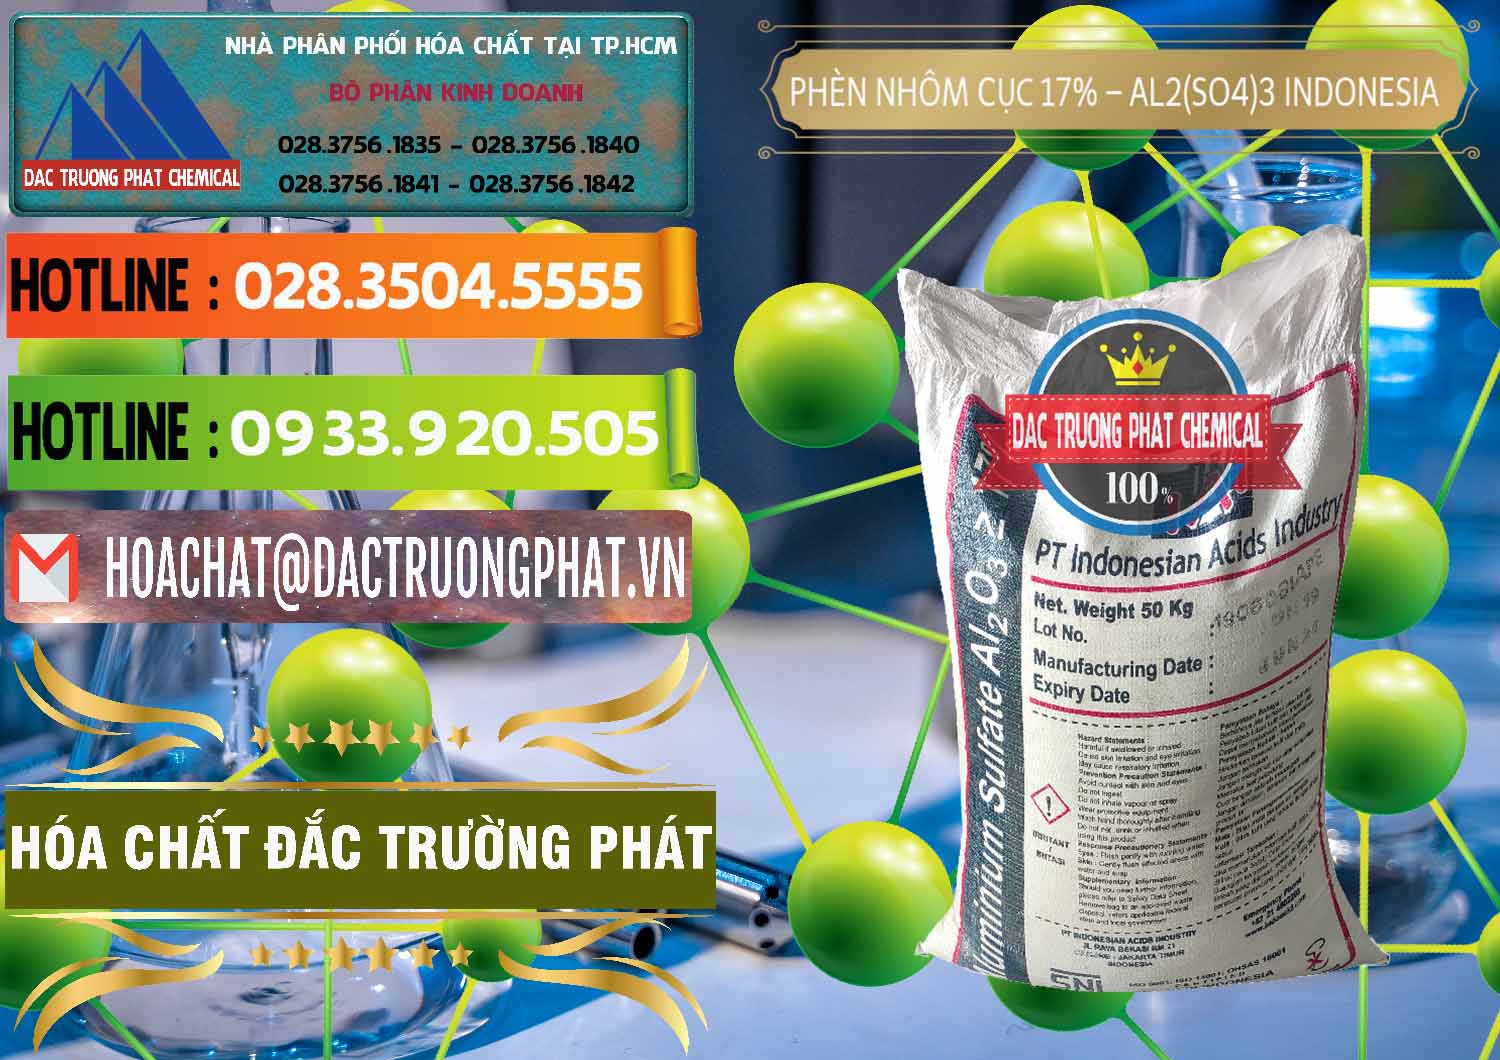 Cty chuyên bán và phân phối Phèn Nhôm Cục - Al2(SO4)3 17% bao 50kg Indonesia - 0113 - Nơi bán và phân phối hóa chất tại TP.HCM - cungcaphoachat.com.vn